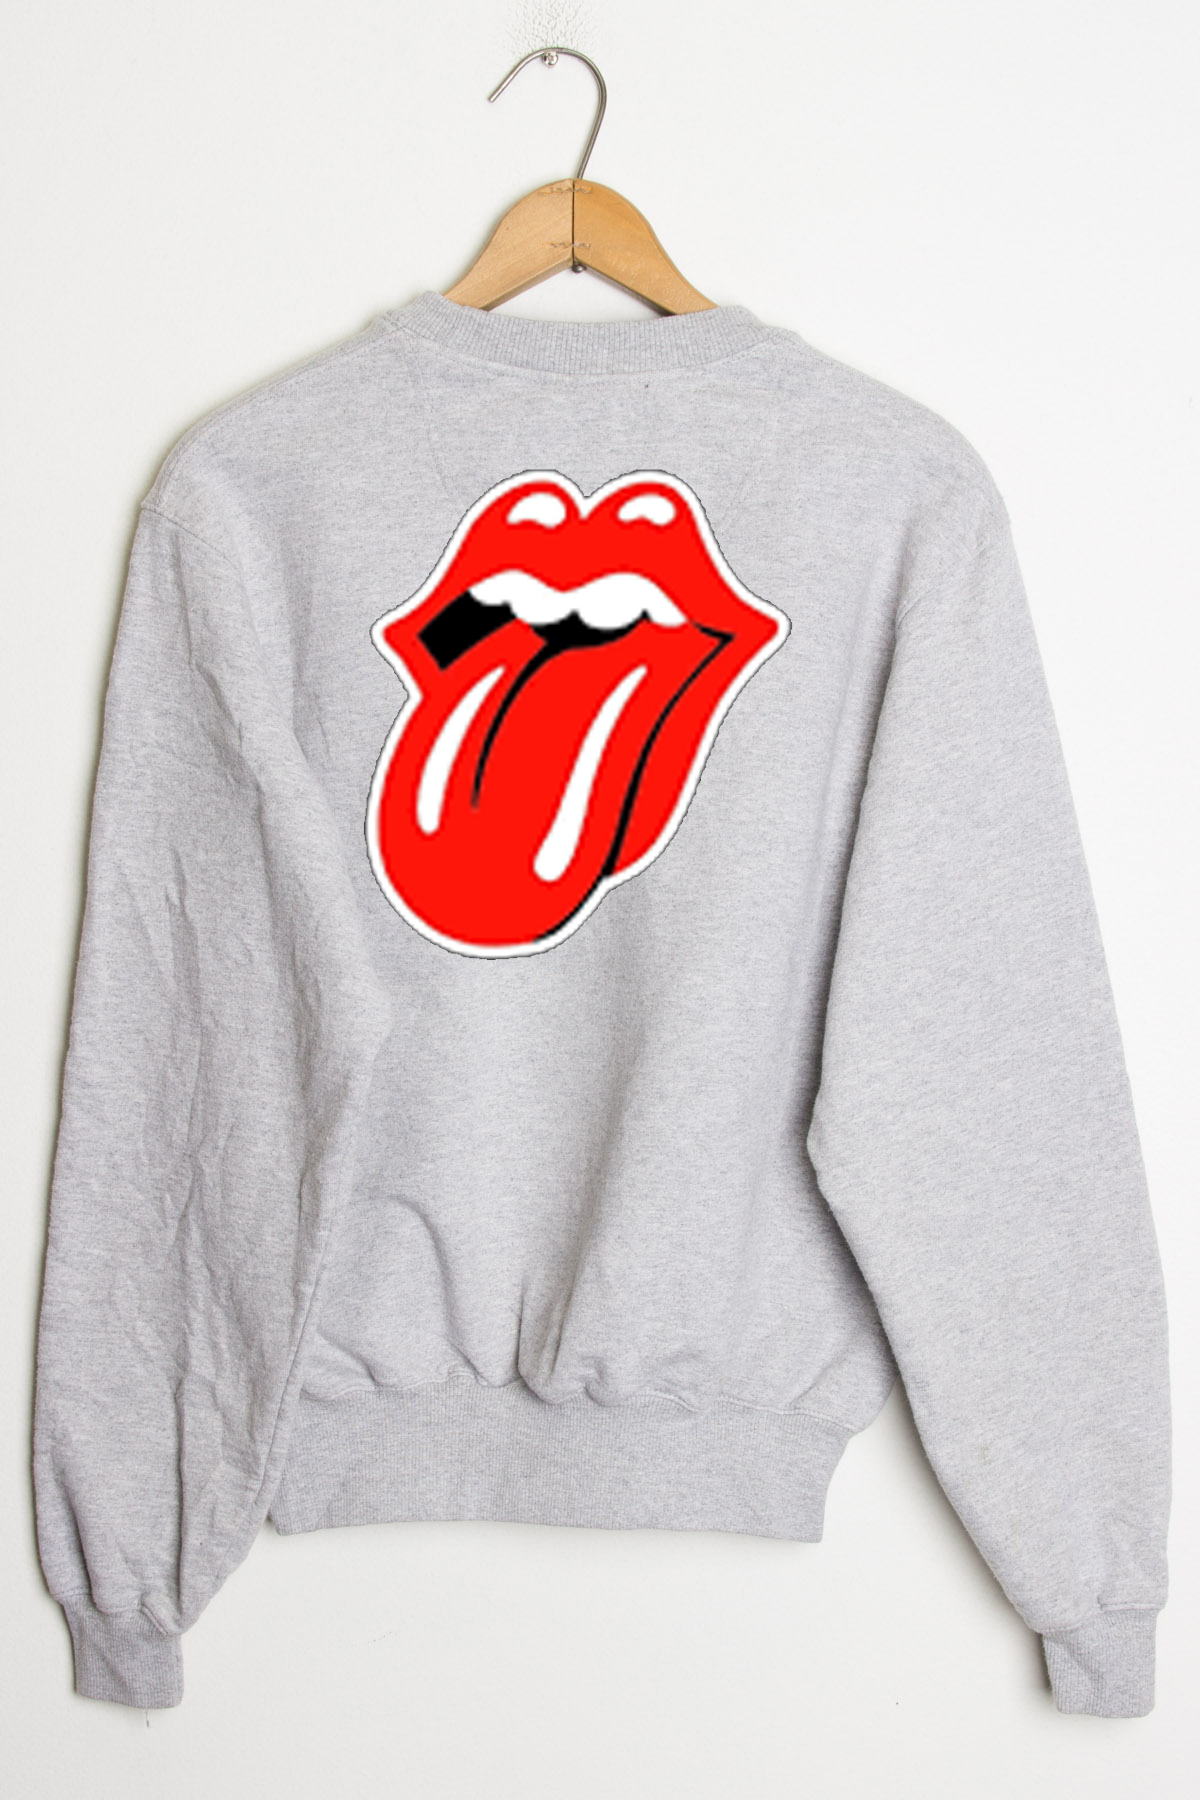 Rolling Stones Sweatshirt Herren Pullover Pulli Sweater Jumper Sport 2600 